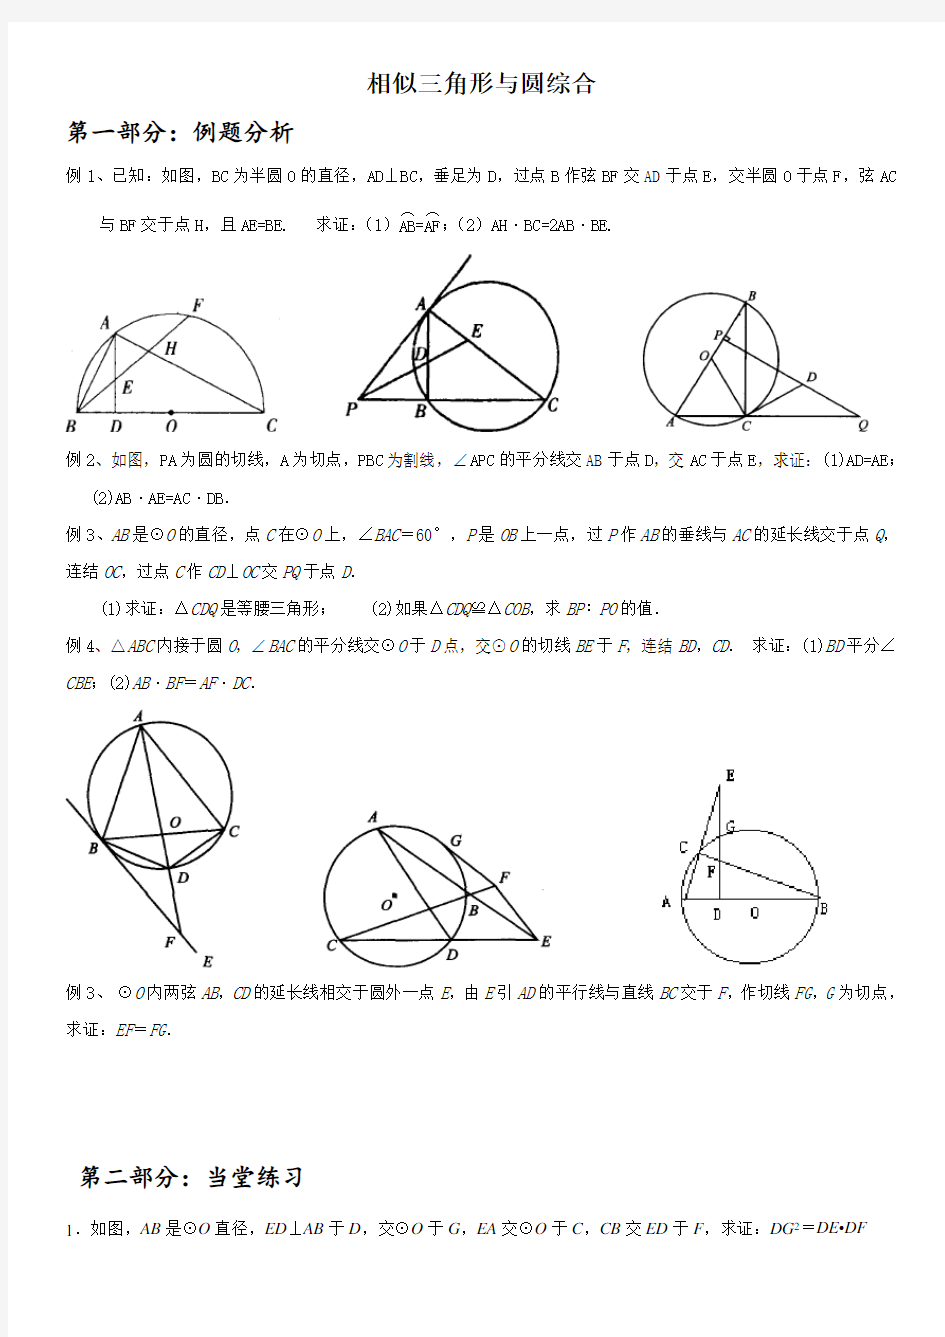 相似三角形与圆综合题